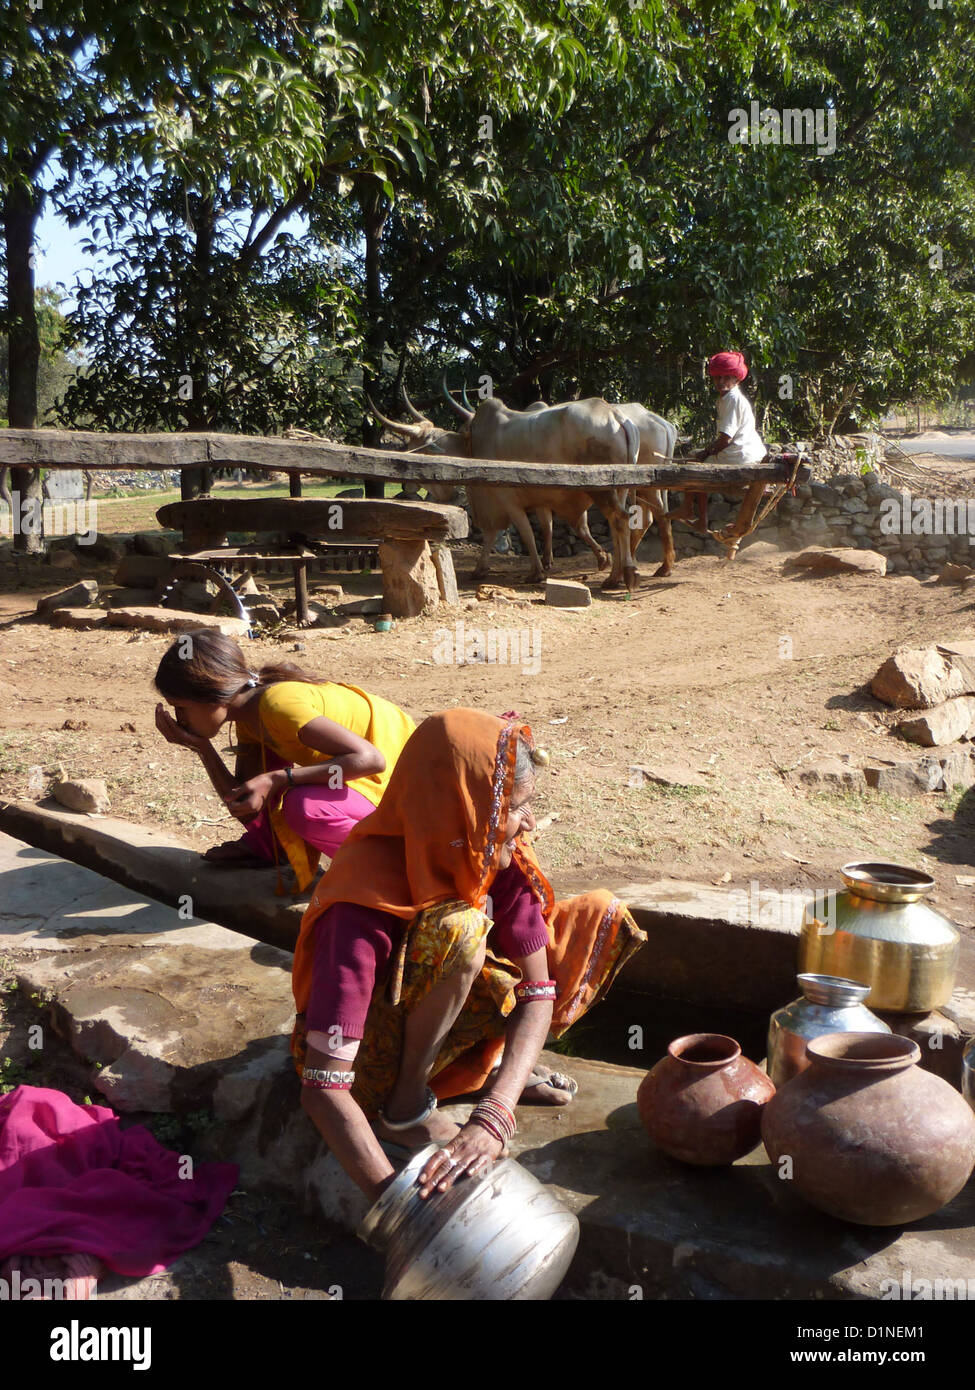 RAJASTHAN, Indien - DEC 3 - alte Indianerin Hols Wasser aus Brunnen in Metall Töpfe, am 3. Dezember 2009, in Rajasthan, Indien Stockfoto